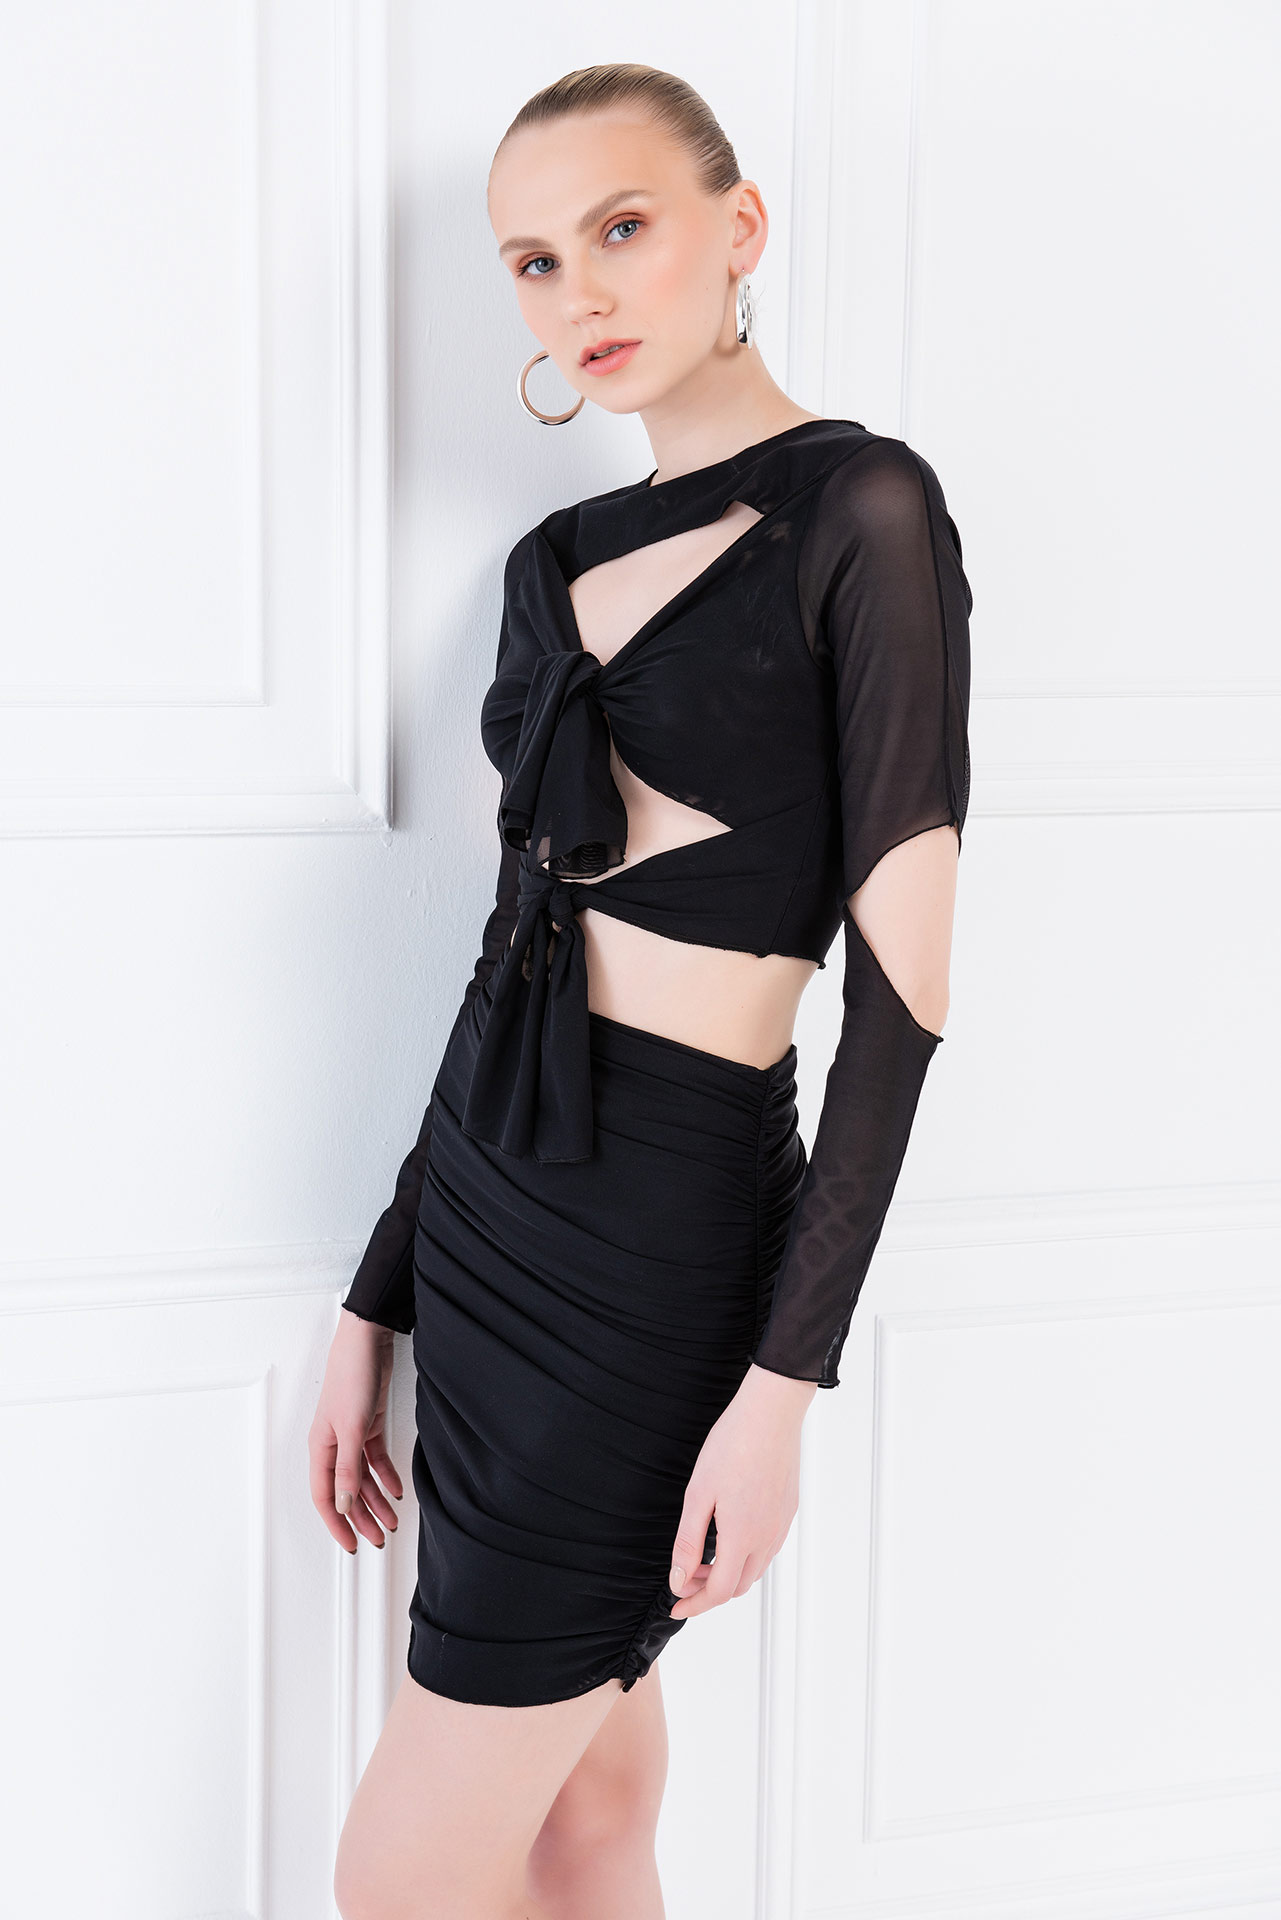 Wholesale Self-Tie Black Mesh Top & Skirt Set